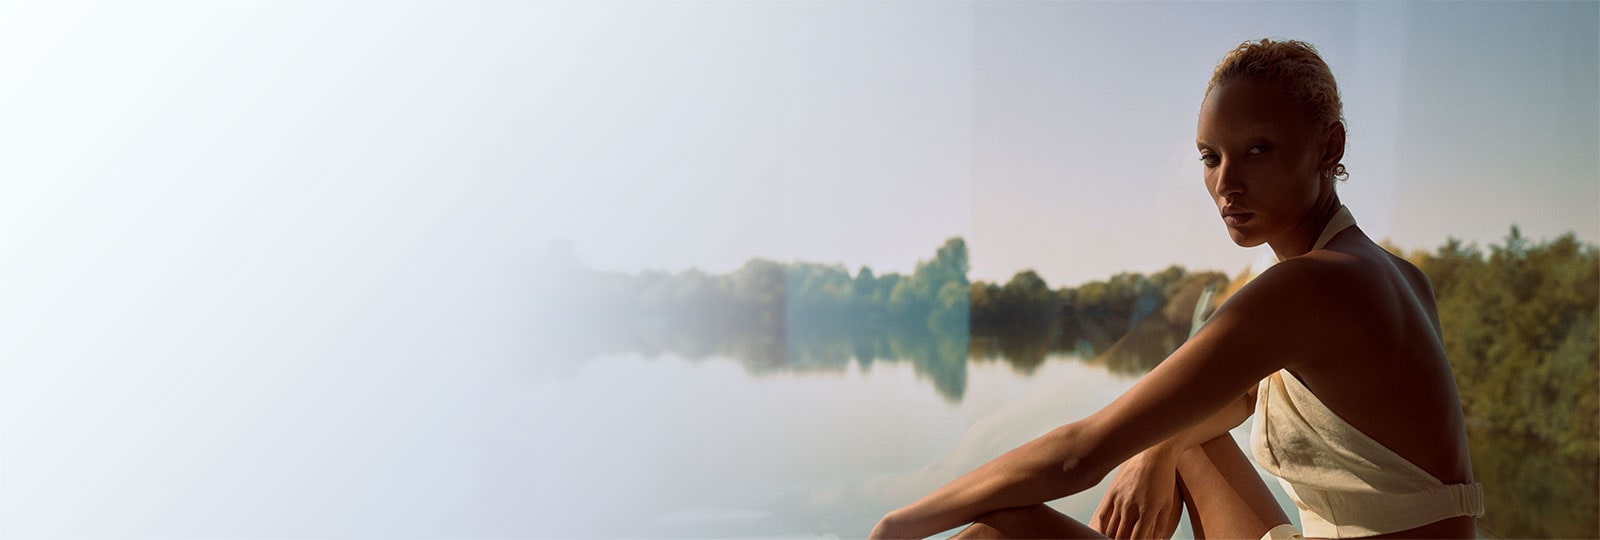 Bilde av en modell som har på seg en av Winter Sun-kapselinnsamlingsstykkene som sitter foran en vakker innsjø